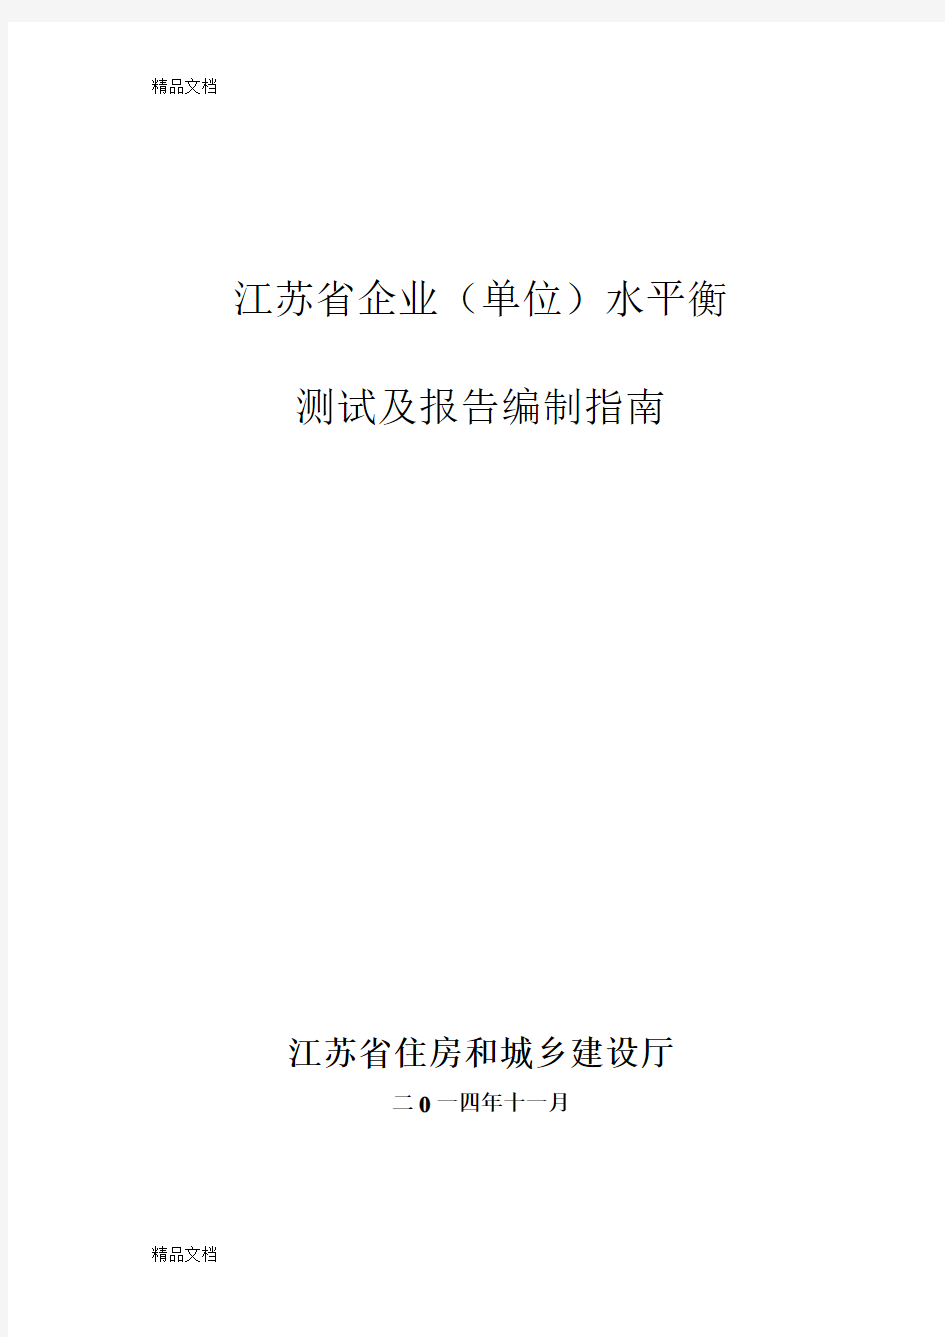 江苏省水平衡测试及报告编写指南修改稿.11.28(汇编)